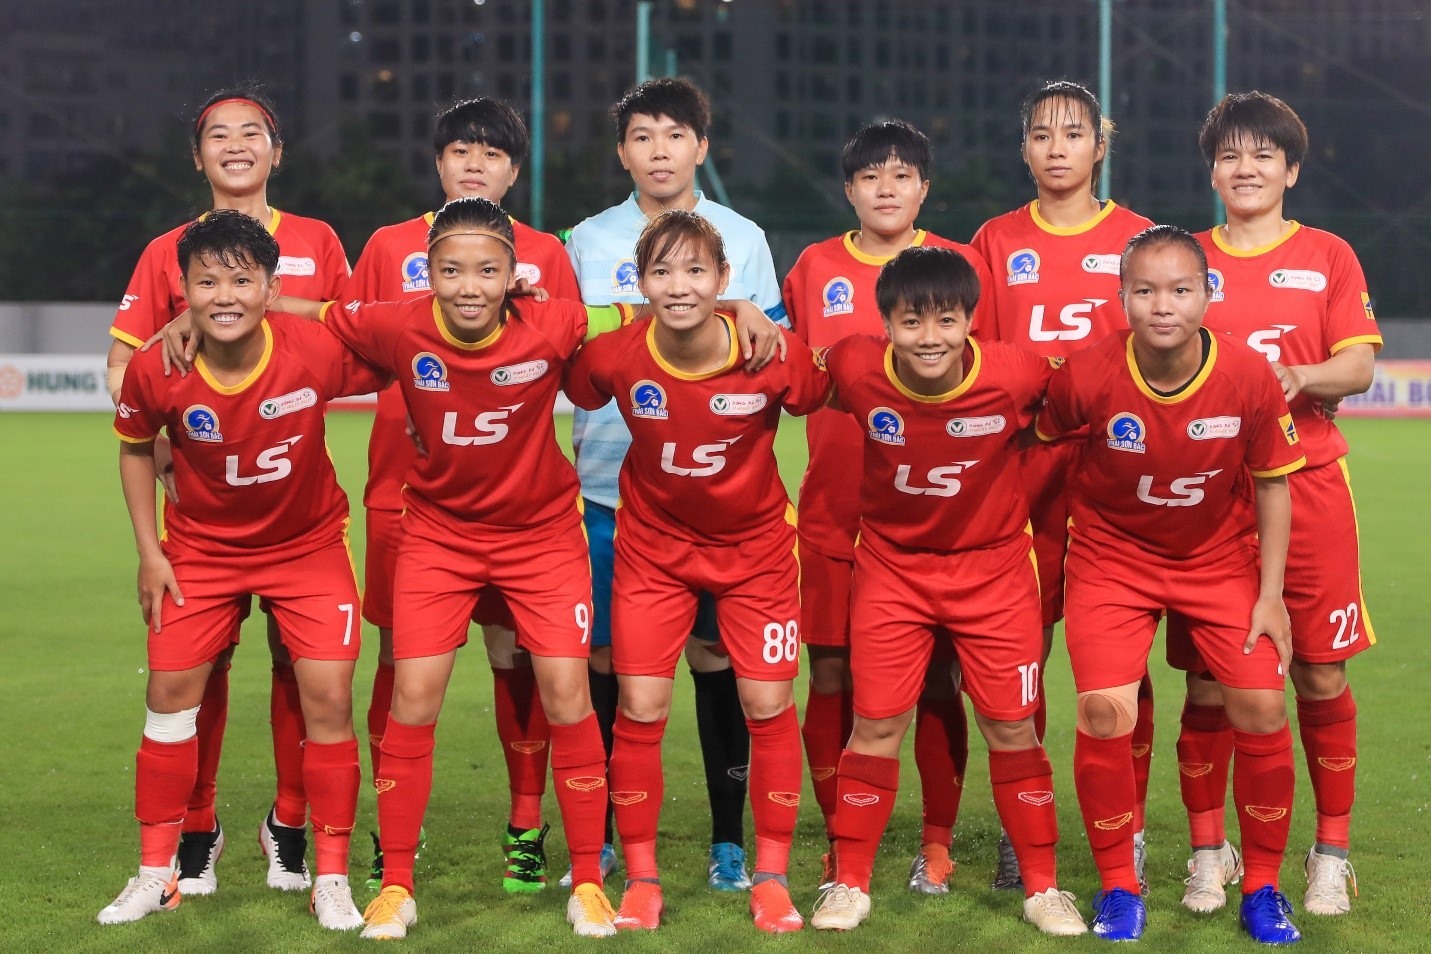 Màn so tài với Hà Nội I tại chung kết bóng đá nữ Cúp Quốc gia 2022 là trận đấu cuối cùng của Huỳnh Như trong màu áo TPHCM I trước khi lên đường sang Bồ Đào Nha, đầu quân cho Lank FC.